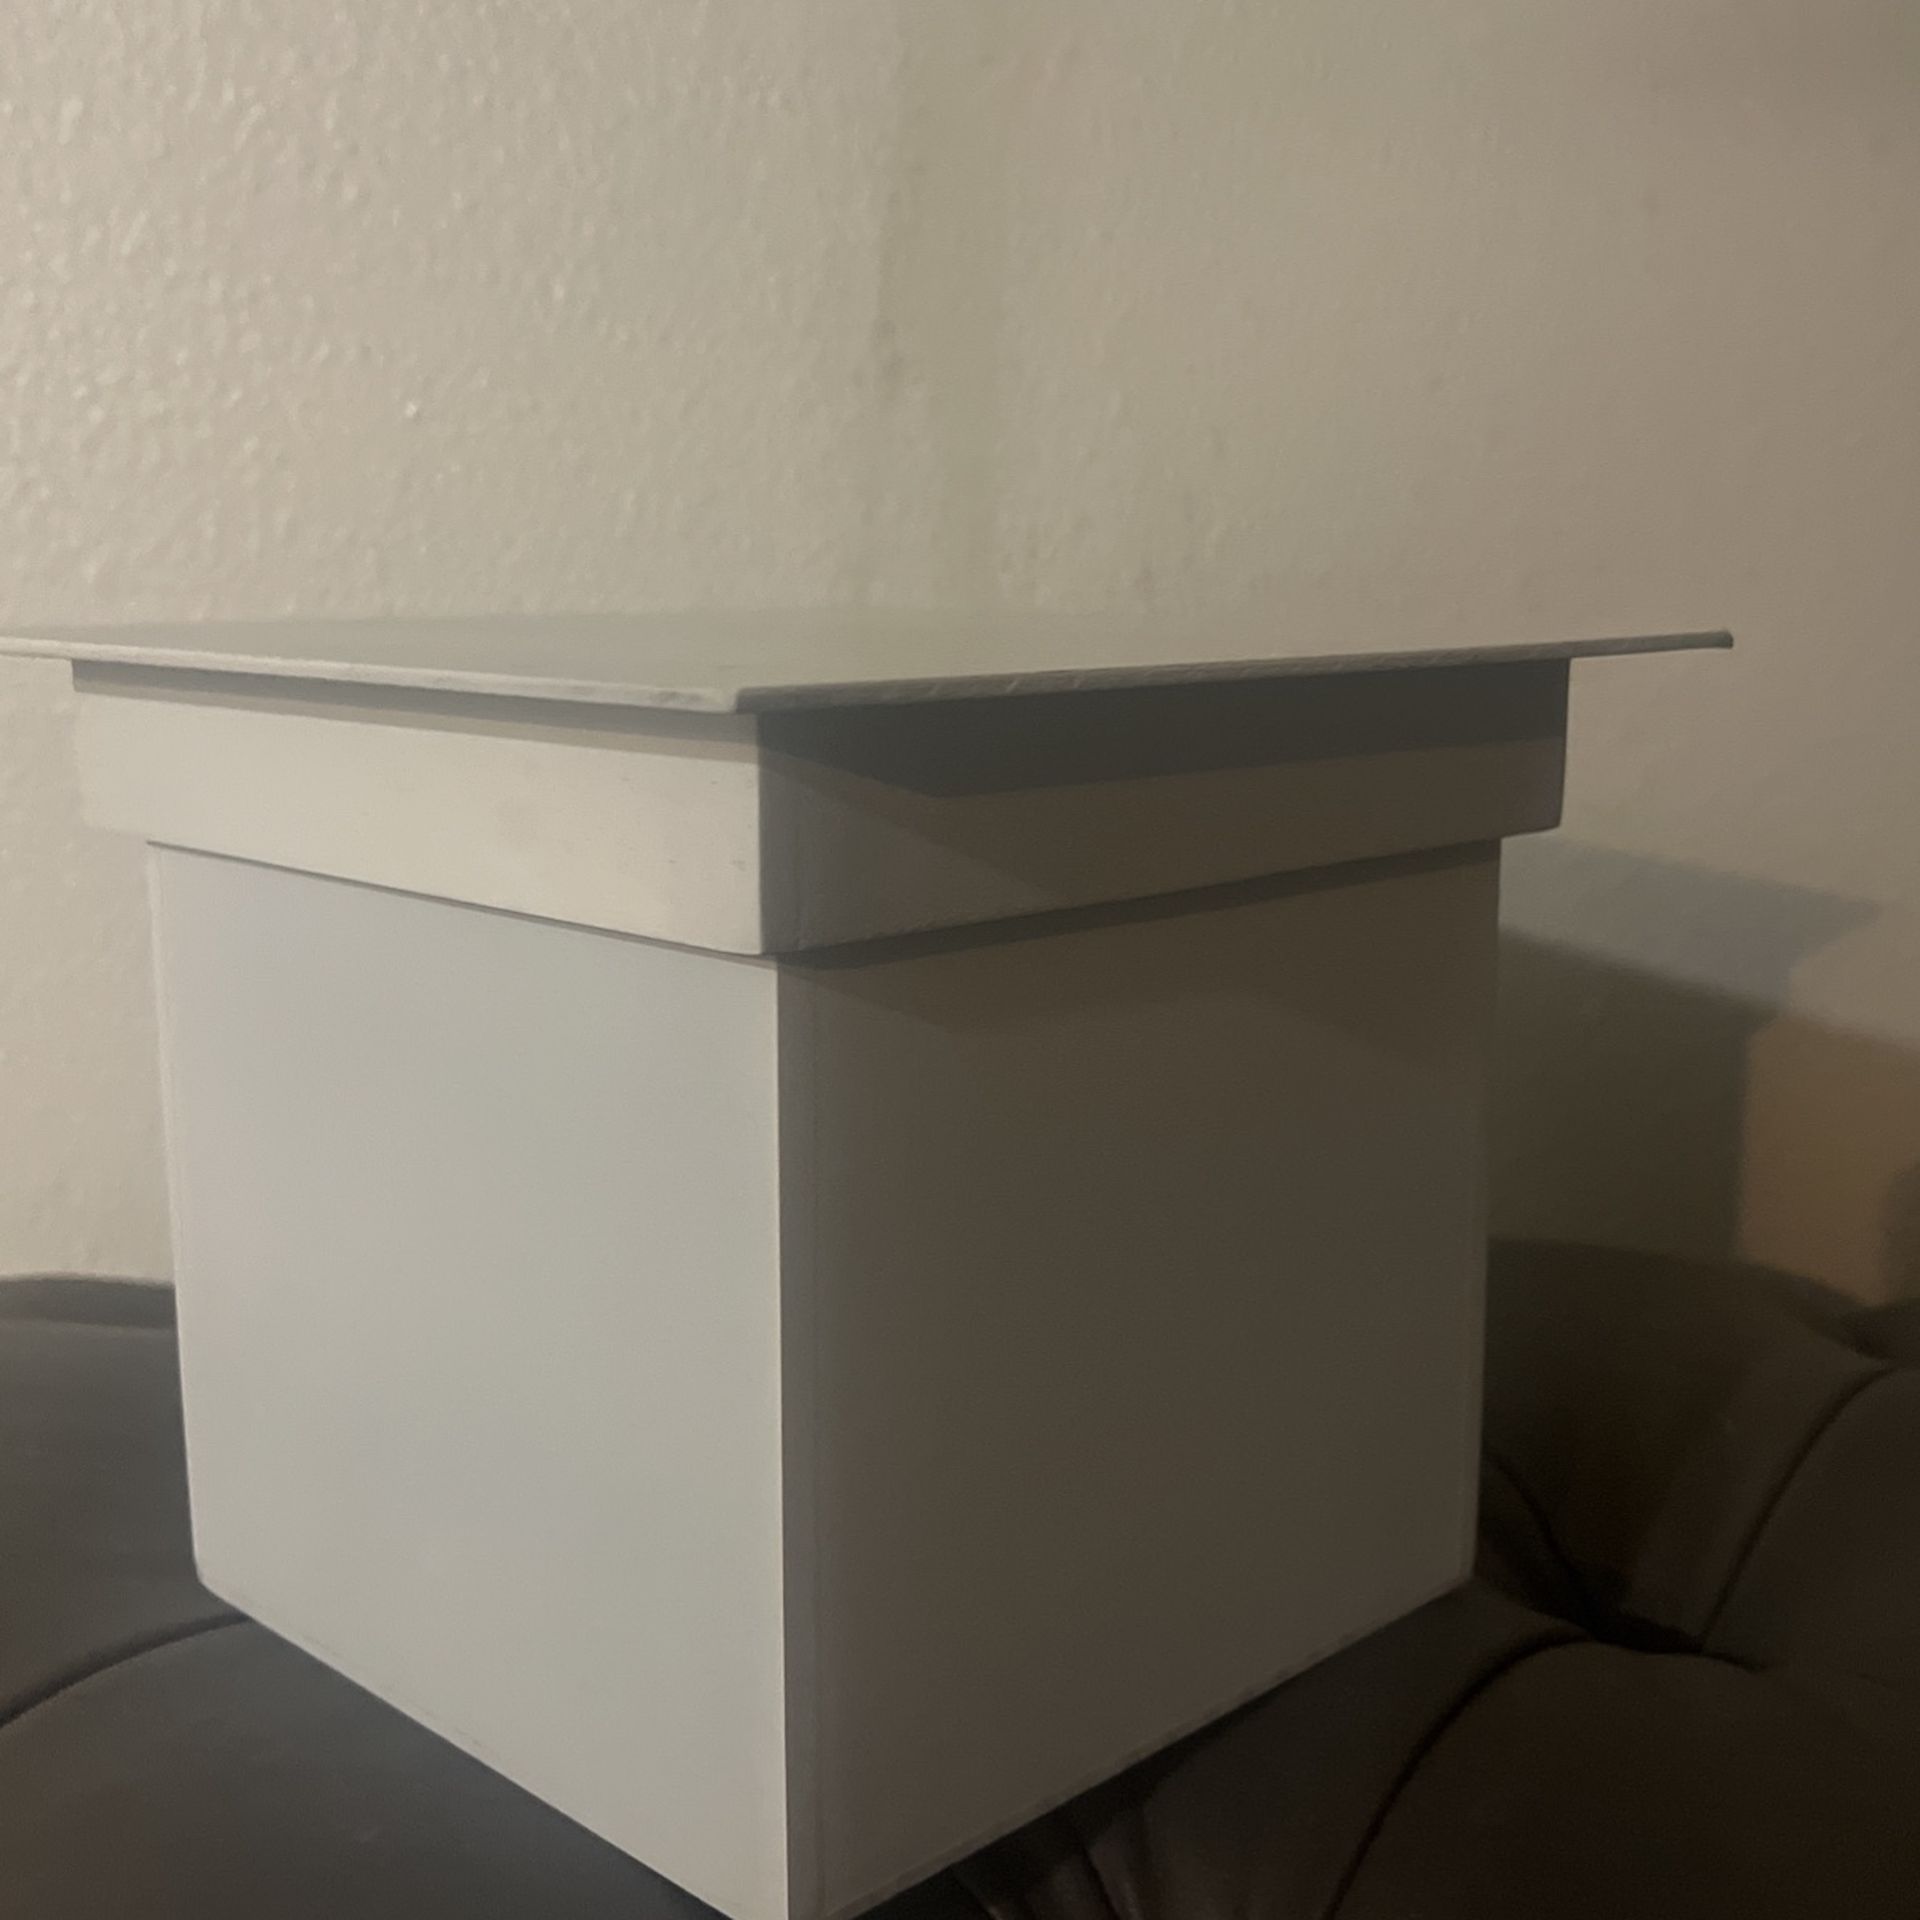 Box/decor